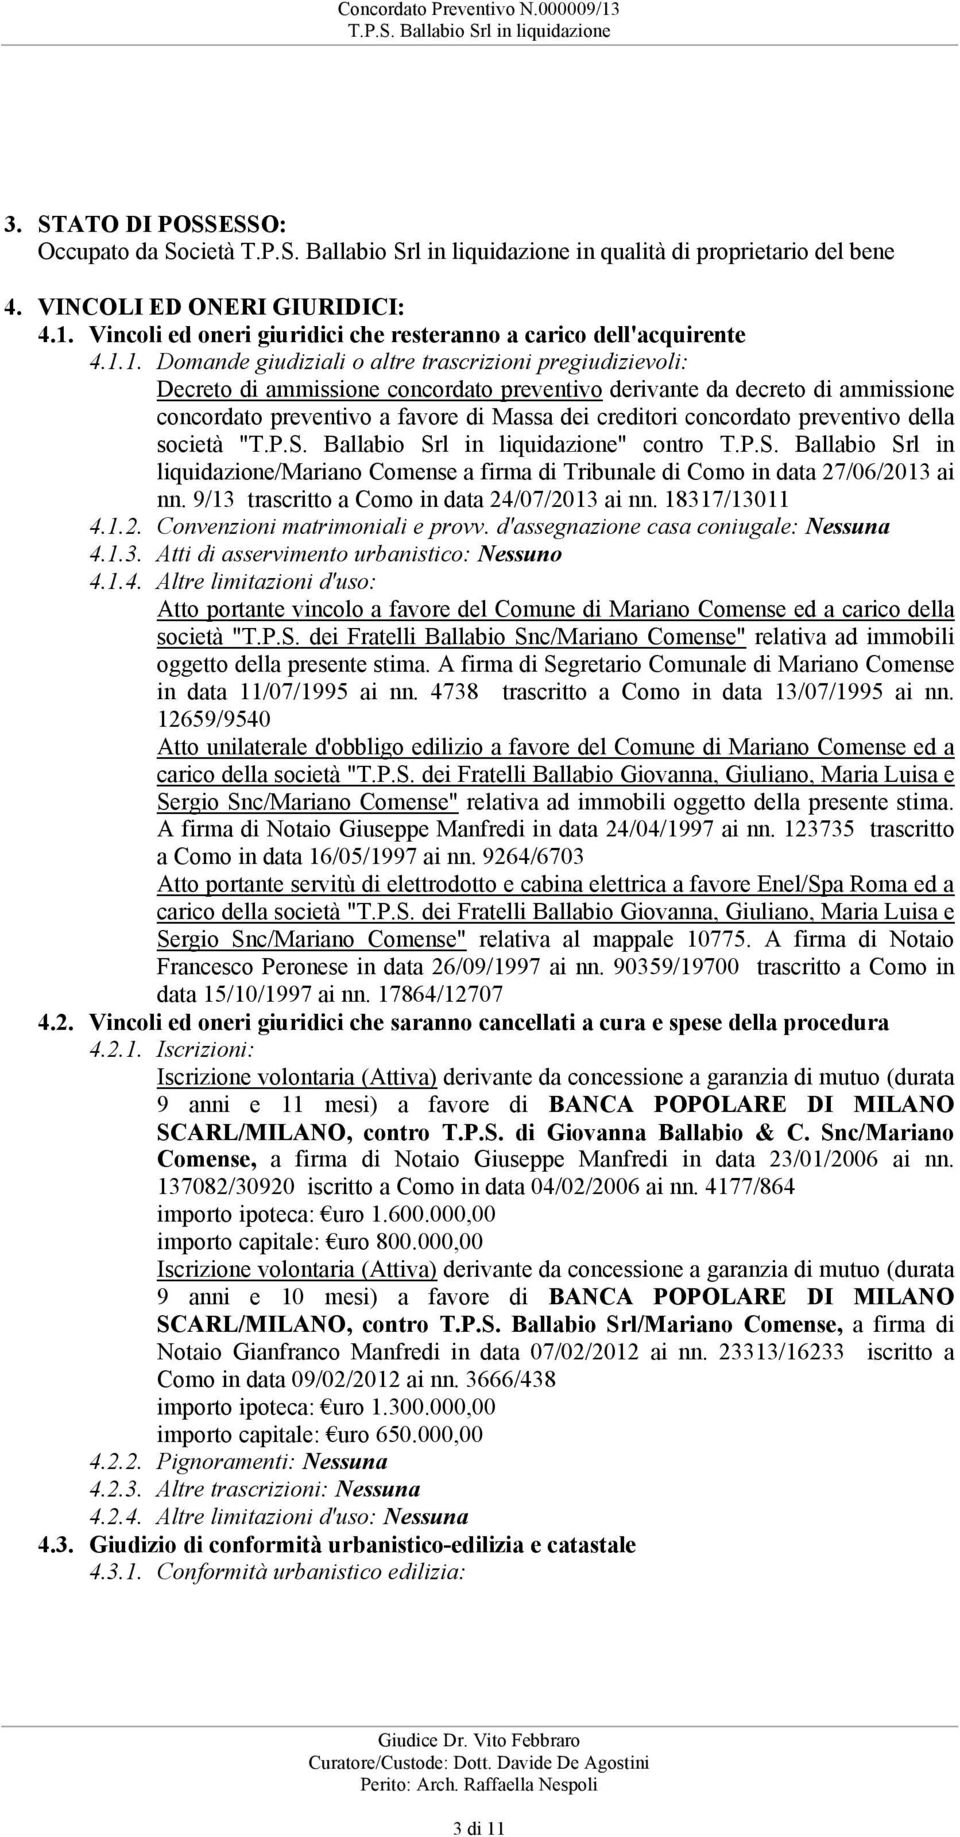 società "" contro TPS Ballabio Srl in liquidazione/mariano Comense a firma di Tribunale di Como in data 27/06/2013 ai nn 9/13 trascritto a Como in data 24/07/2013 ai nn 18317/13011 412 Convenzioni